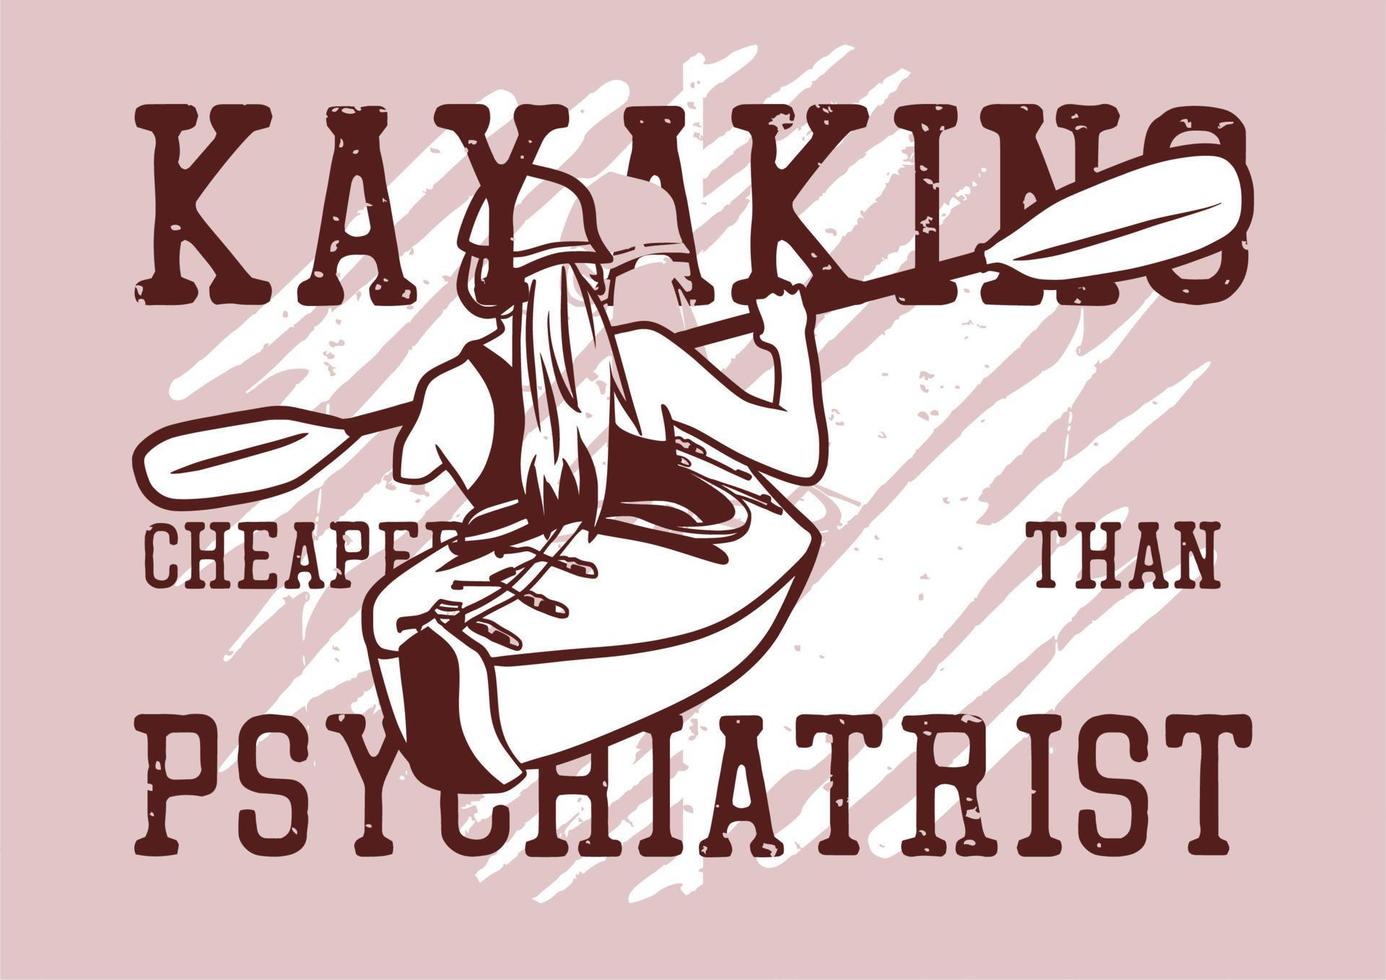 conception de t-shirt kayak moins cher qu'un psychiatre avec une femme faisant du kayak sur la rivière illustration vintage vecteur